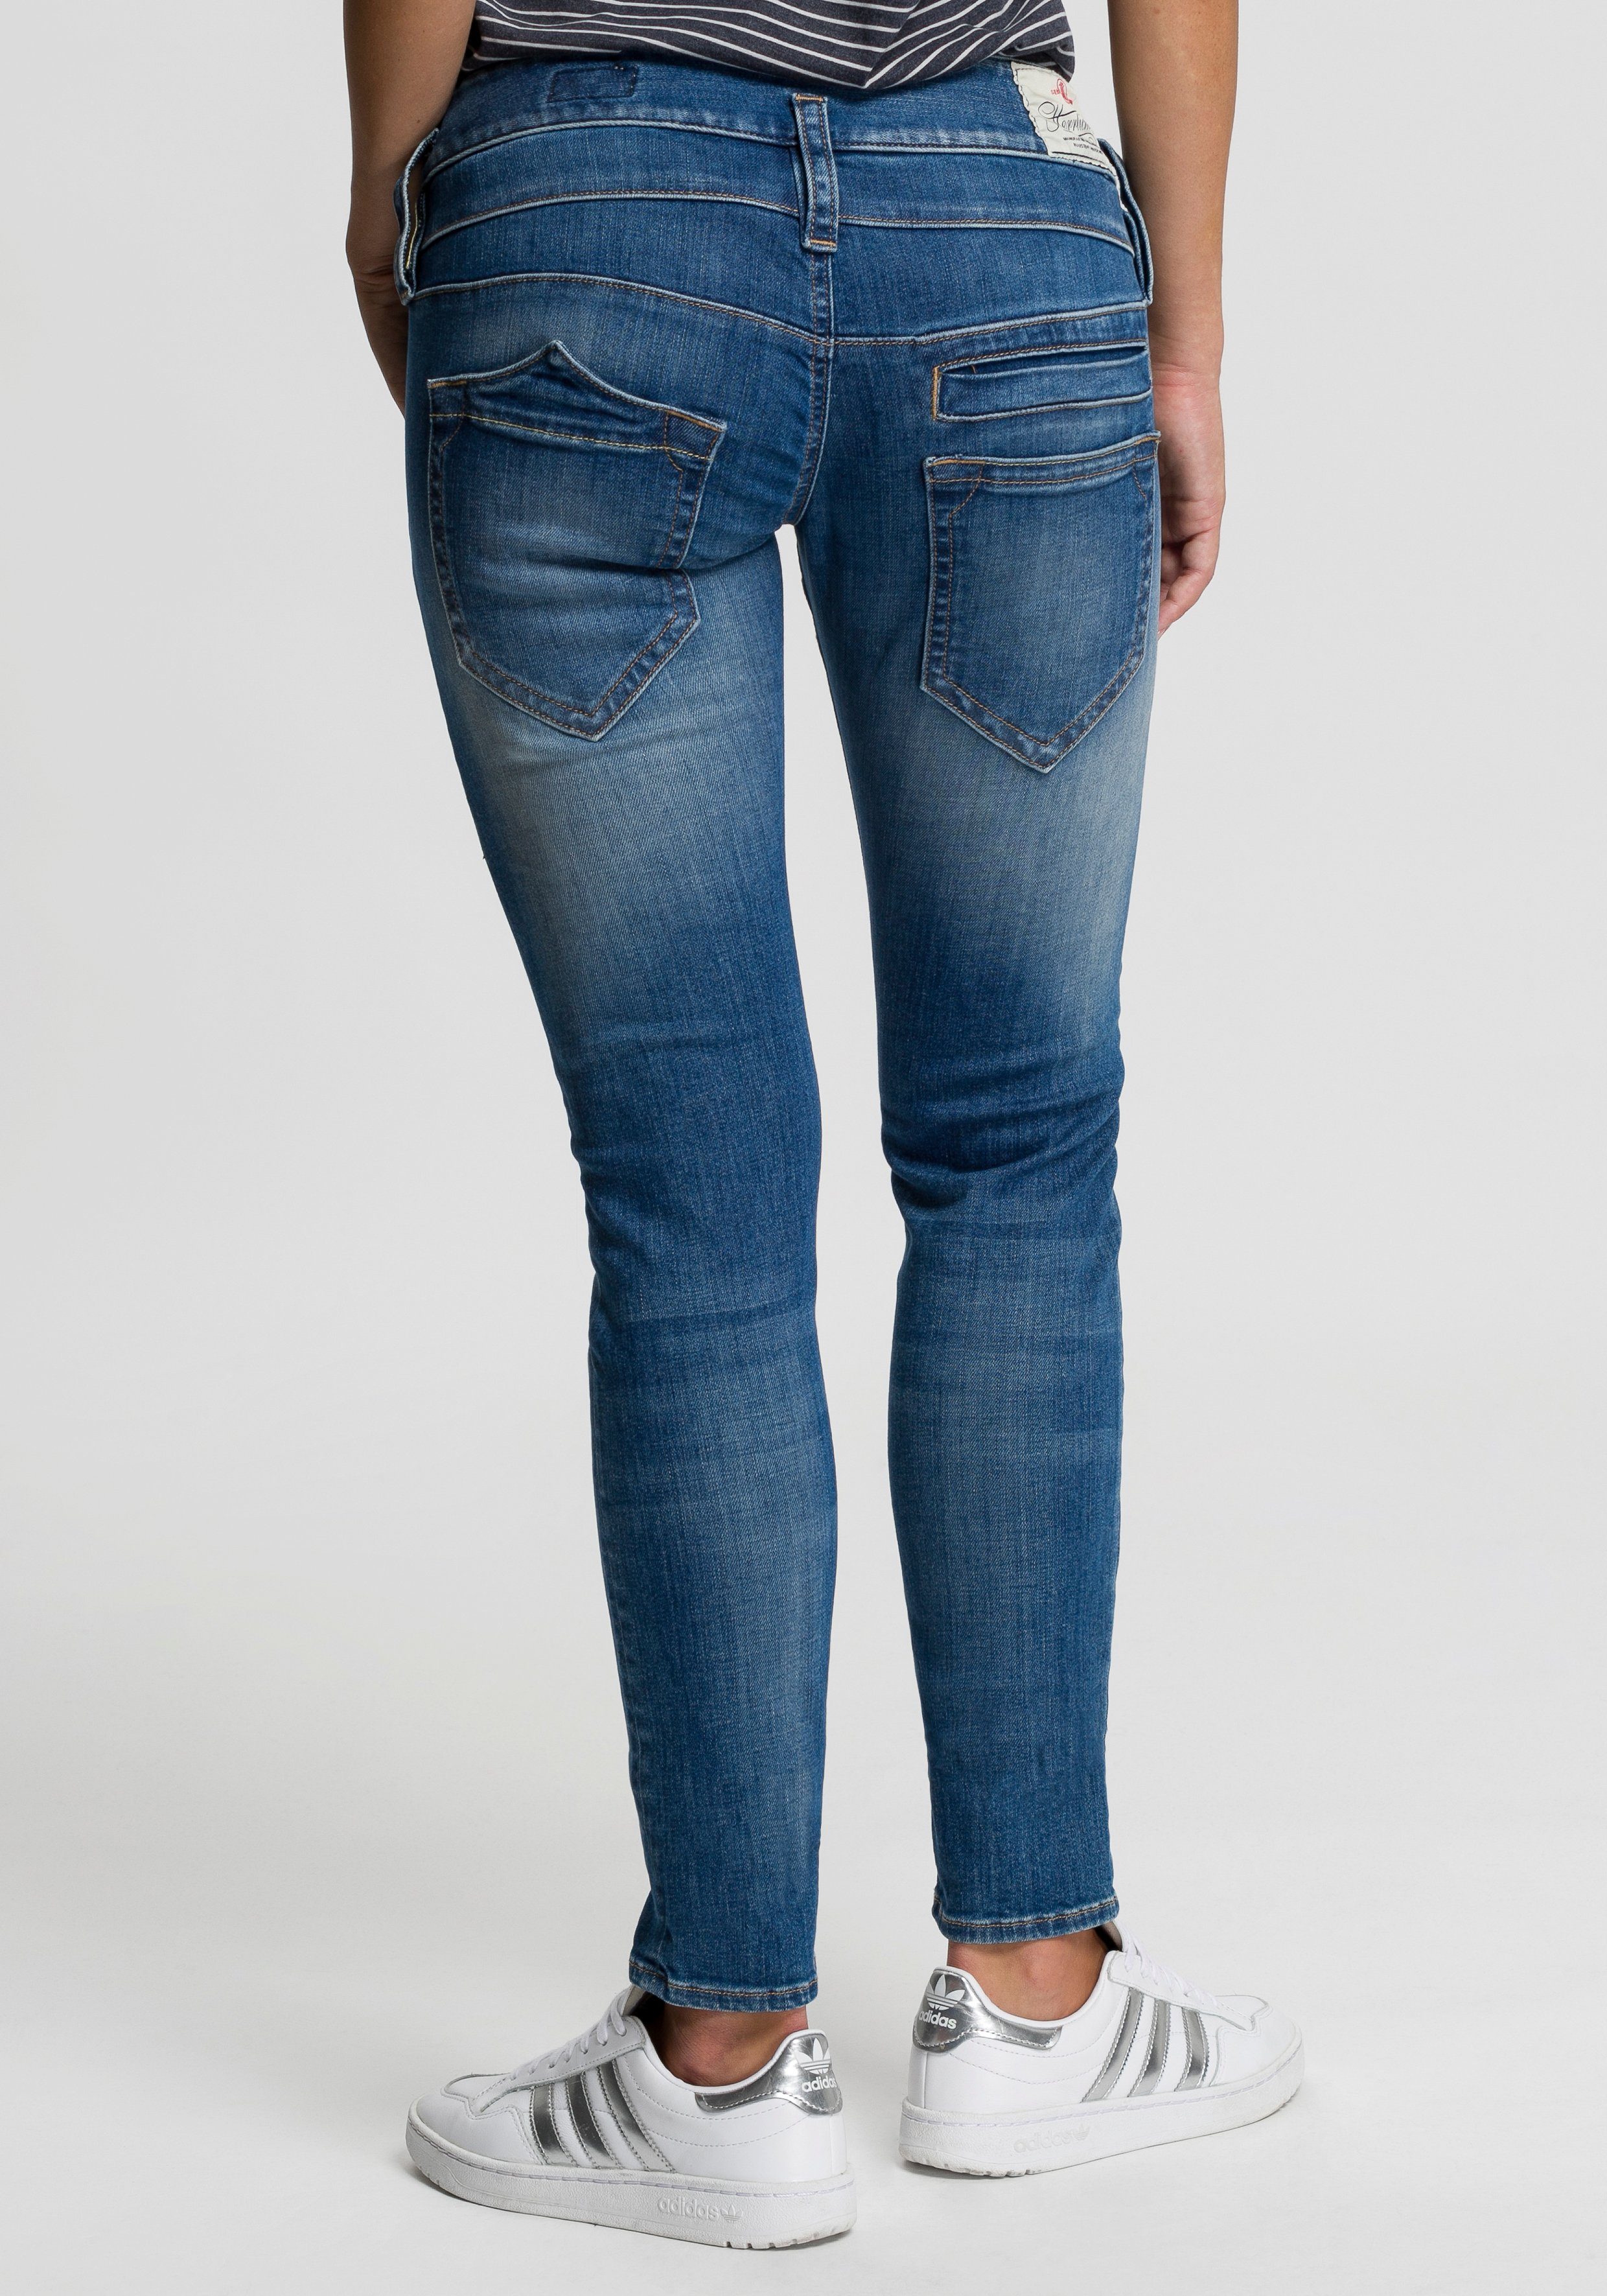 Günstige Jeans kaufen » Bis zu 40% Rabatt | OTTO